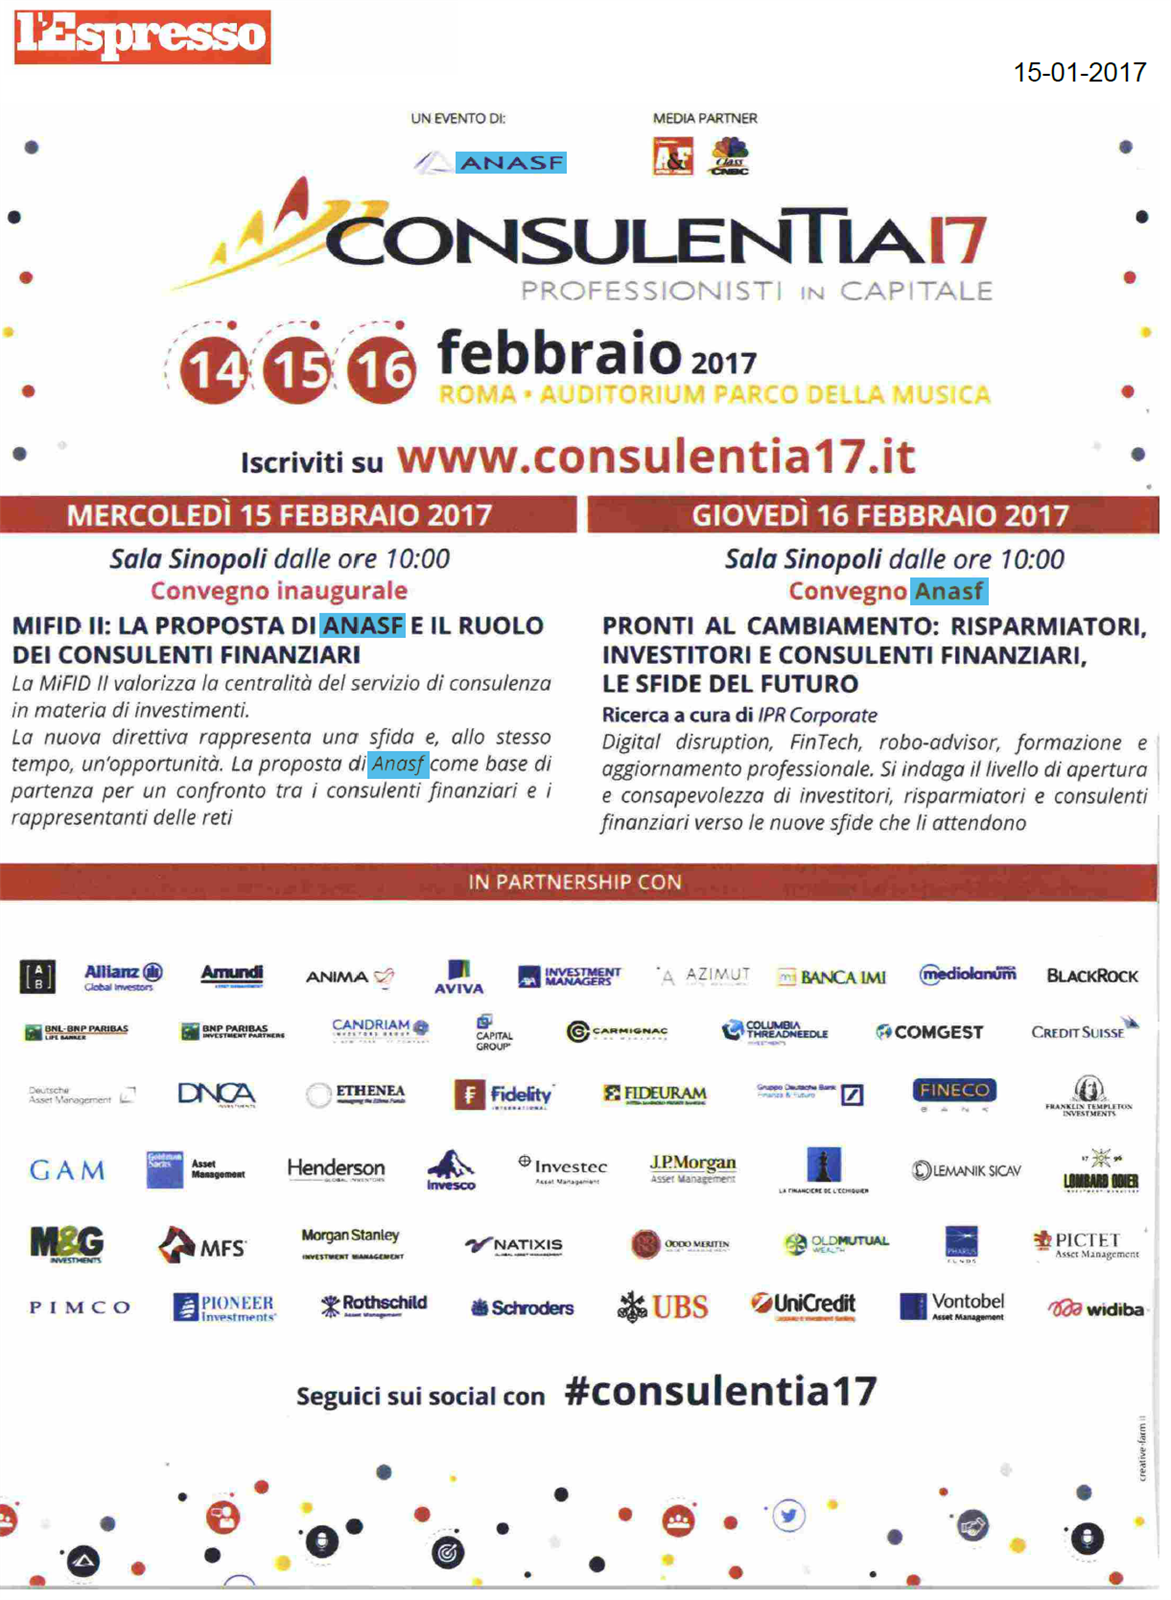 La pubblicità di ConsulenTia17 Roma su L'Espresso